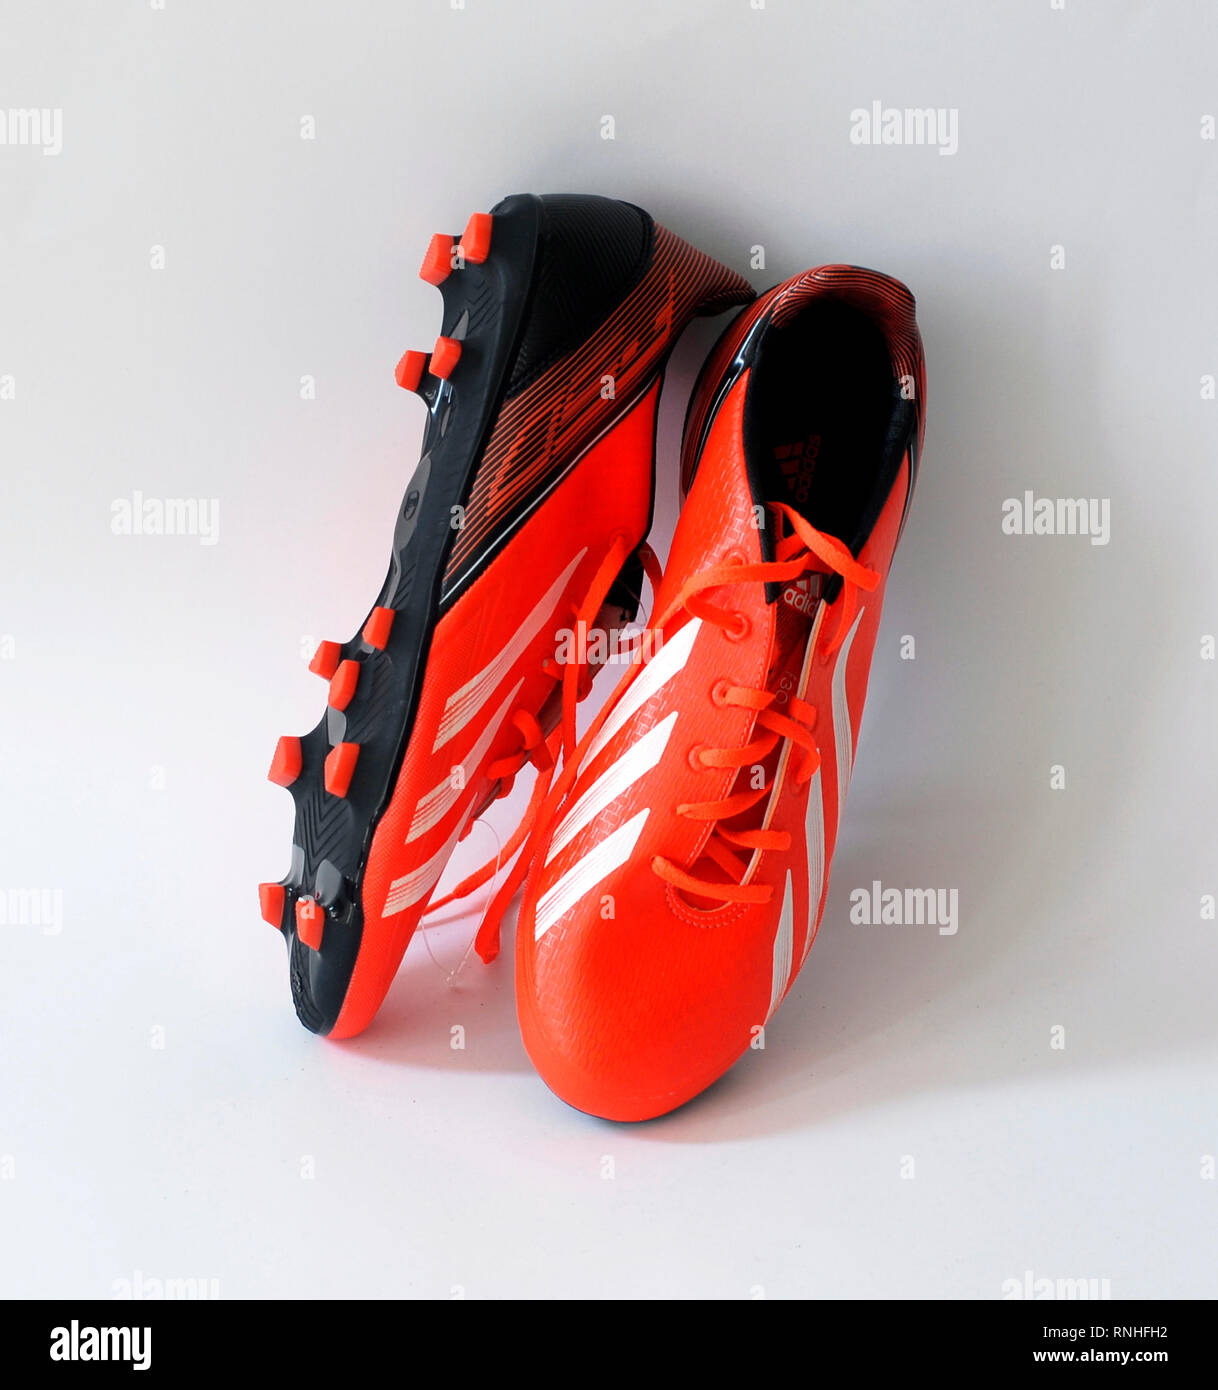 adidas football boots 2014